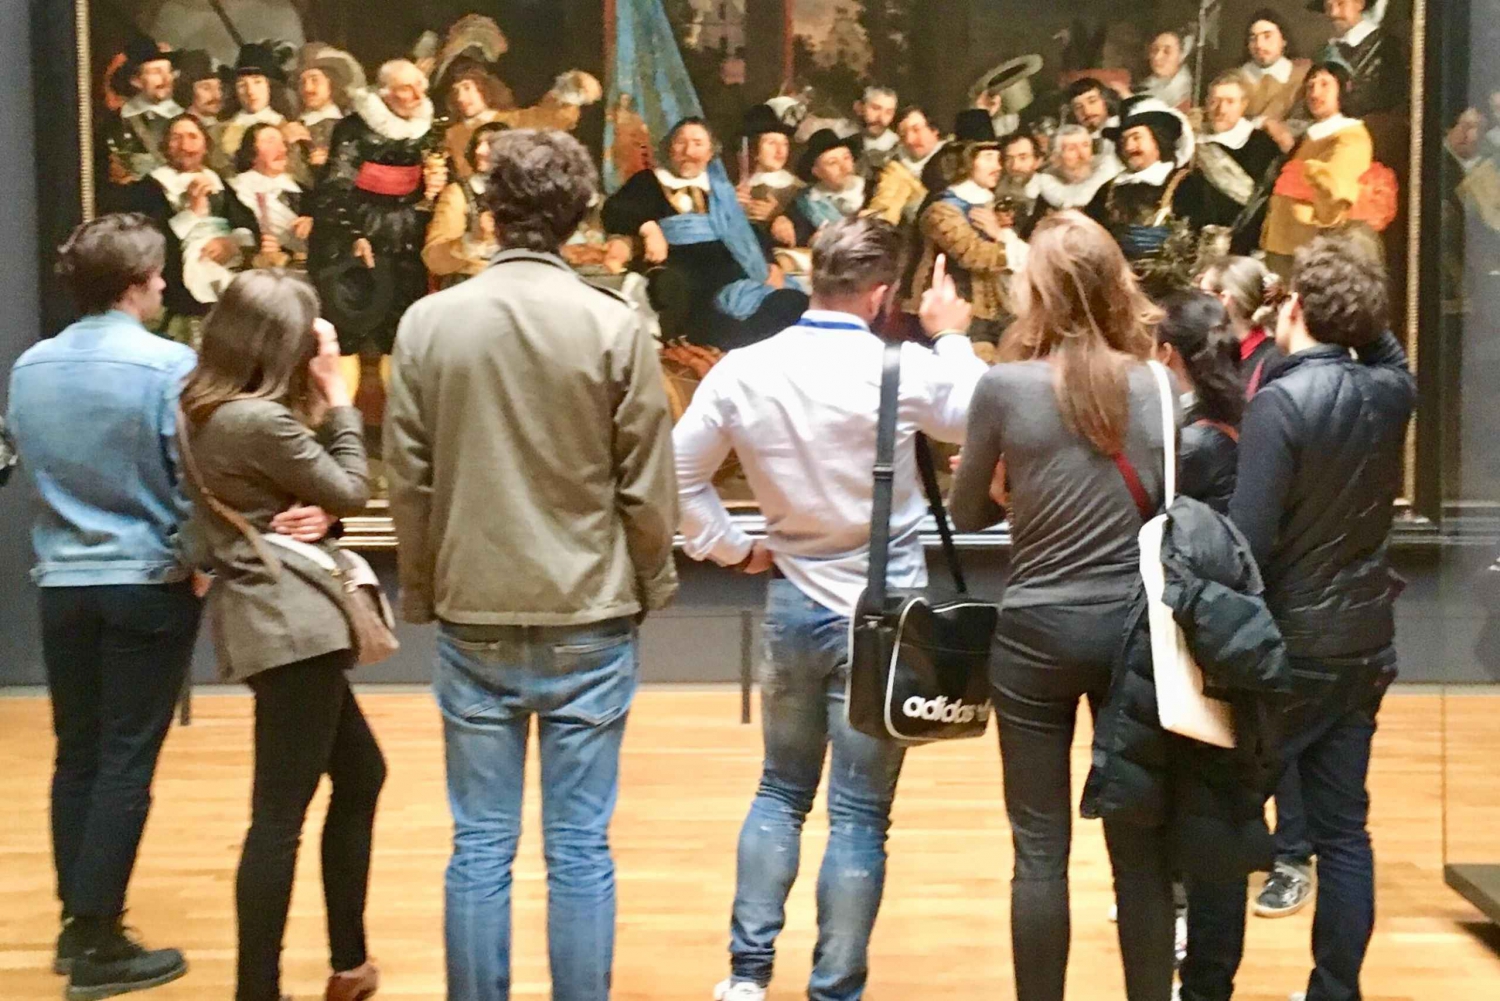 Visita guiada ao Rijksmuseum com ingresso de entrada (máximo de 8 pessoas)